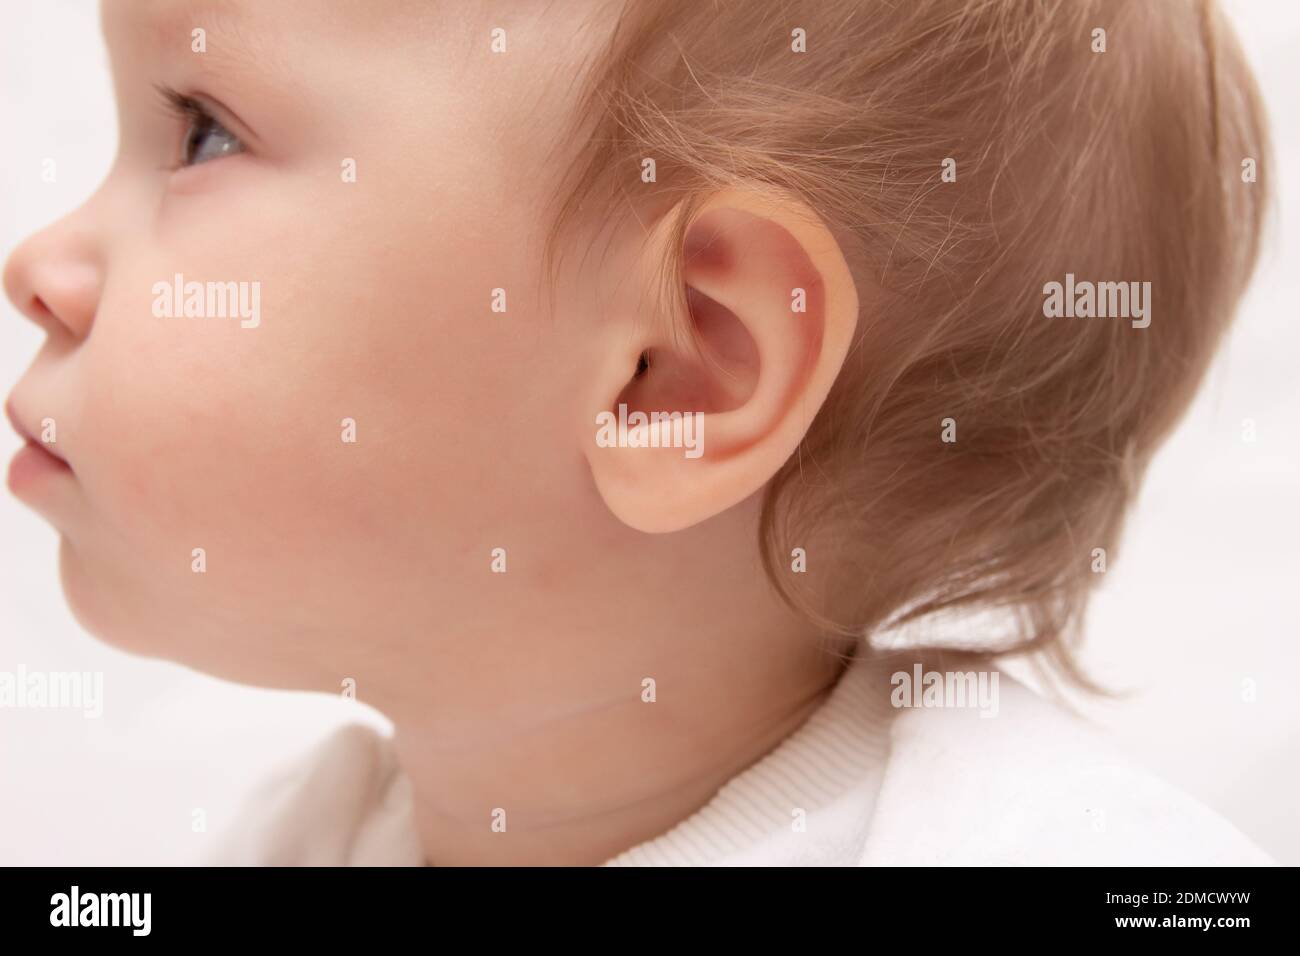 le visage de bébé en gros plan, en profil Photo Stock - Alamy